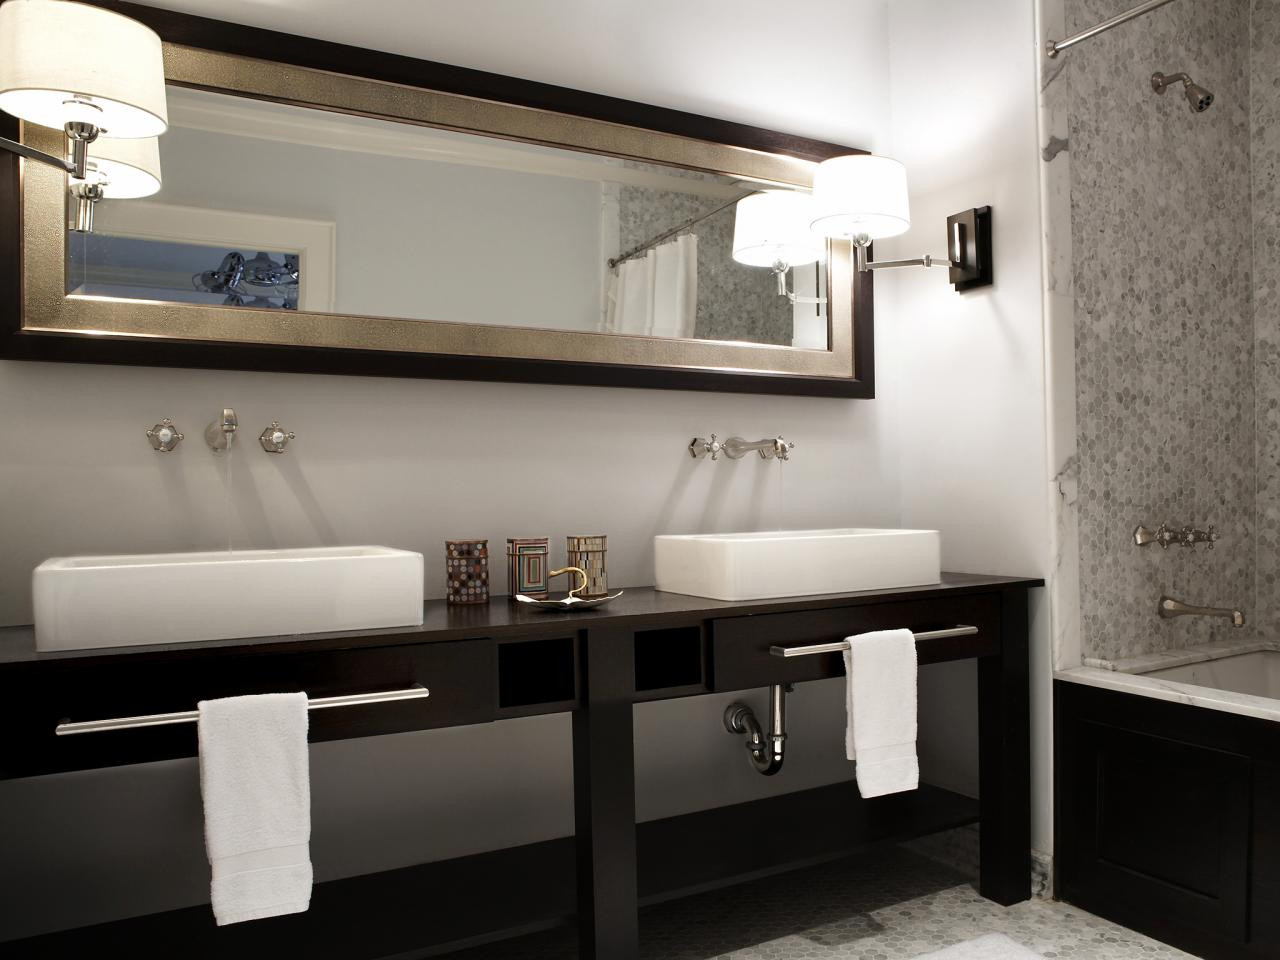 Bathroom Vanity Mirror Ideas
 Decorative Bathroom Vanity Mirrors in Elegant Bathroom